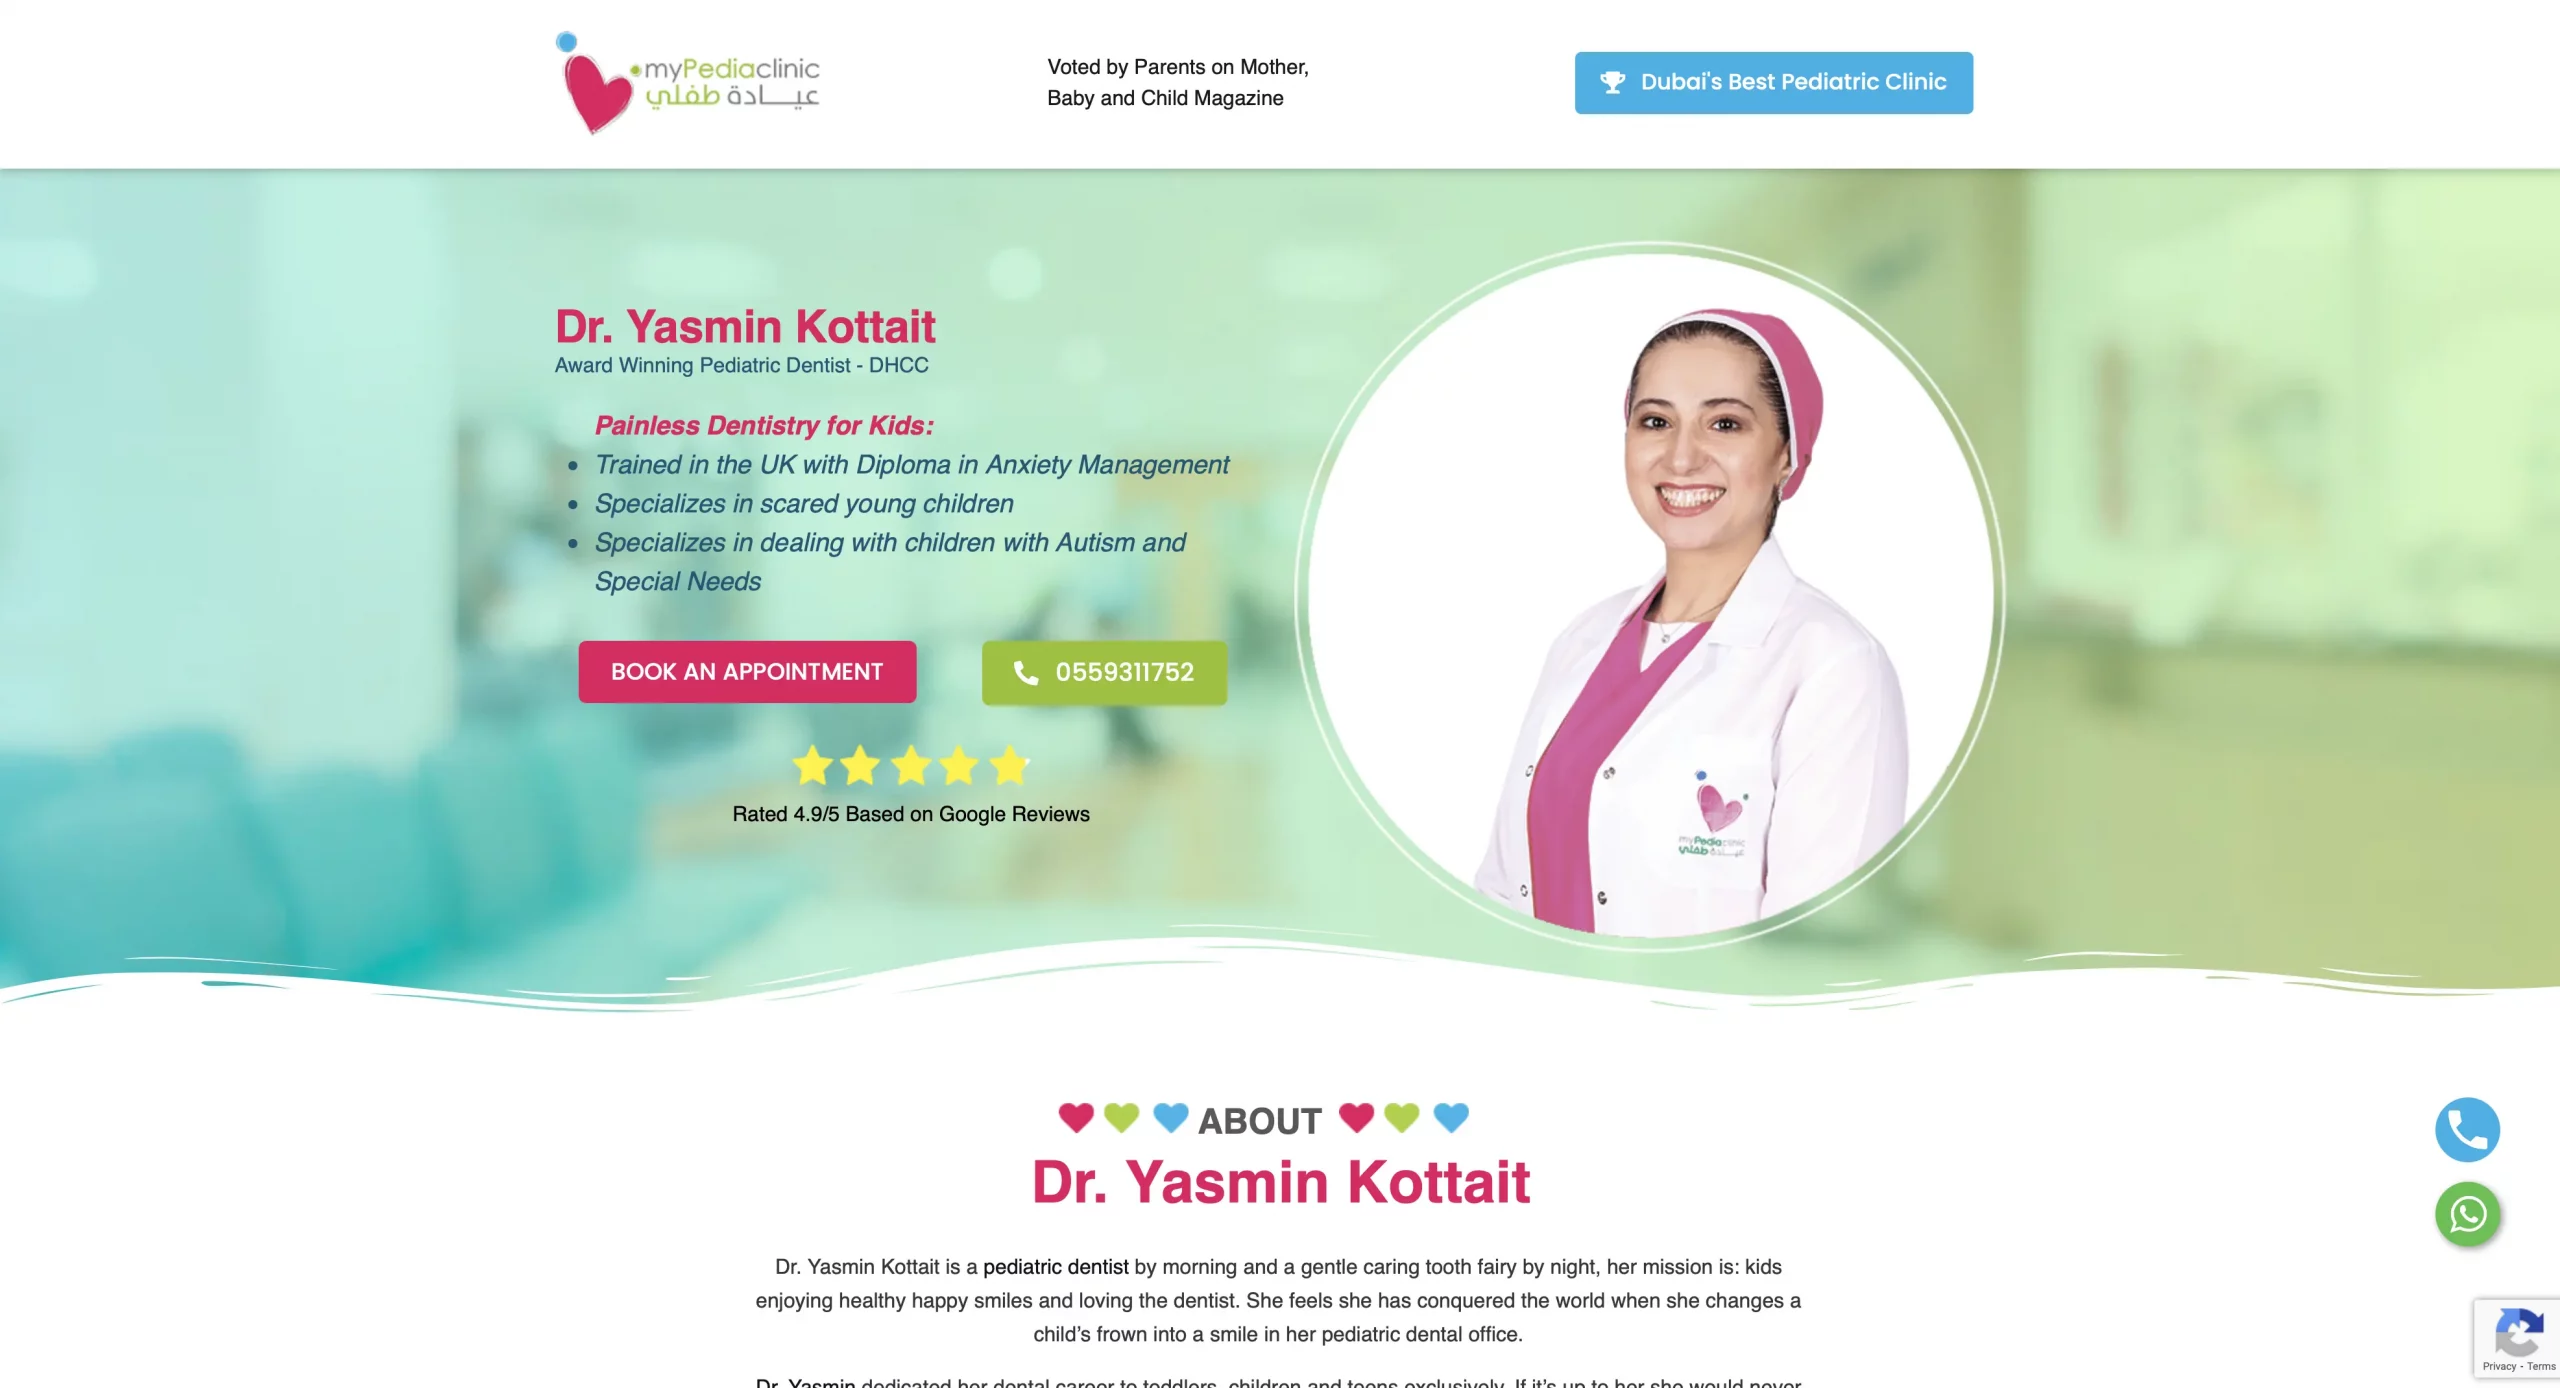 Dr. Yasmin